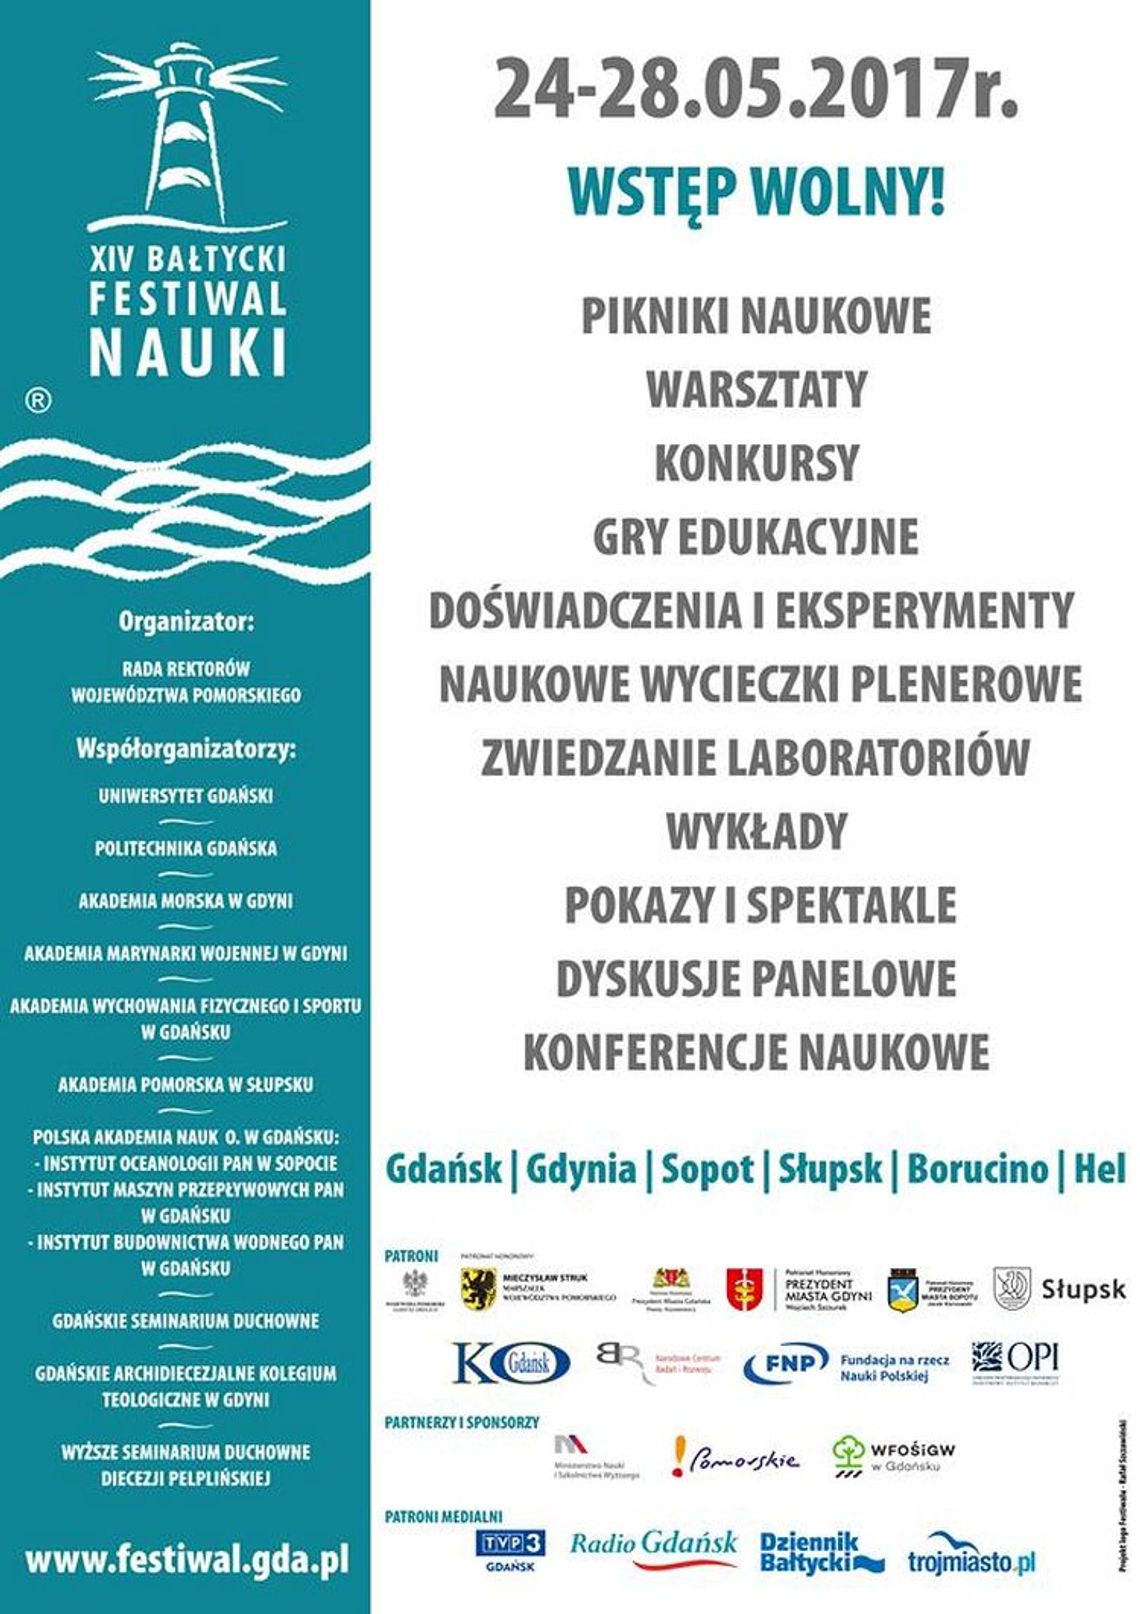 XIV Bałtycki Festiwal Nauki w Gdyni